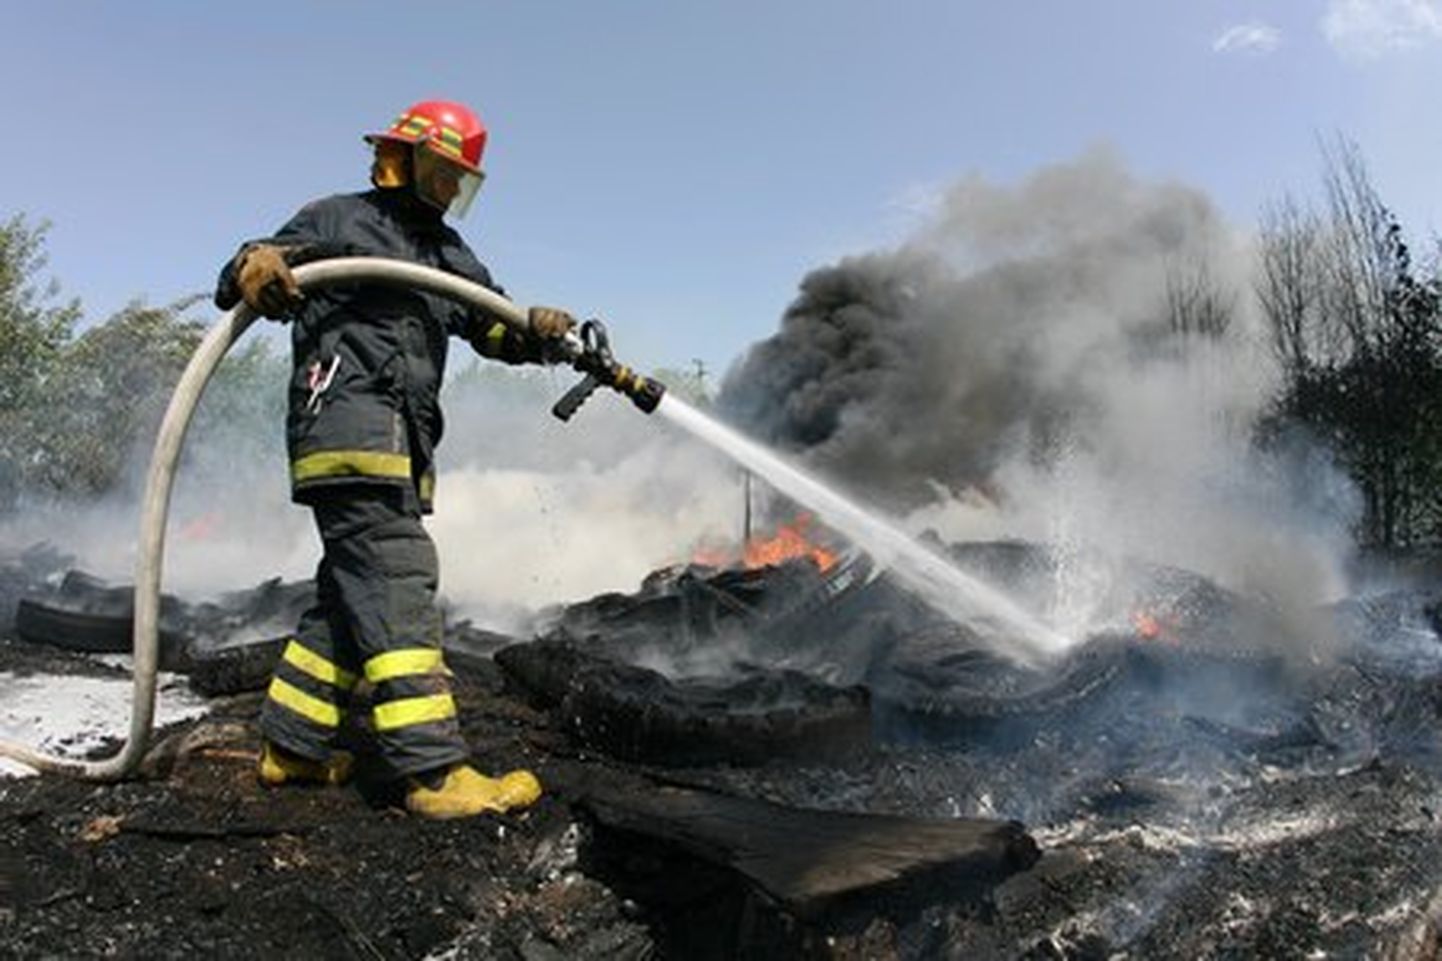 Rehvide põletamine on äärmiselt keskkonnaohtlik tegevus. Foto on illustratiivne.